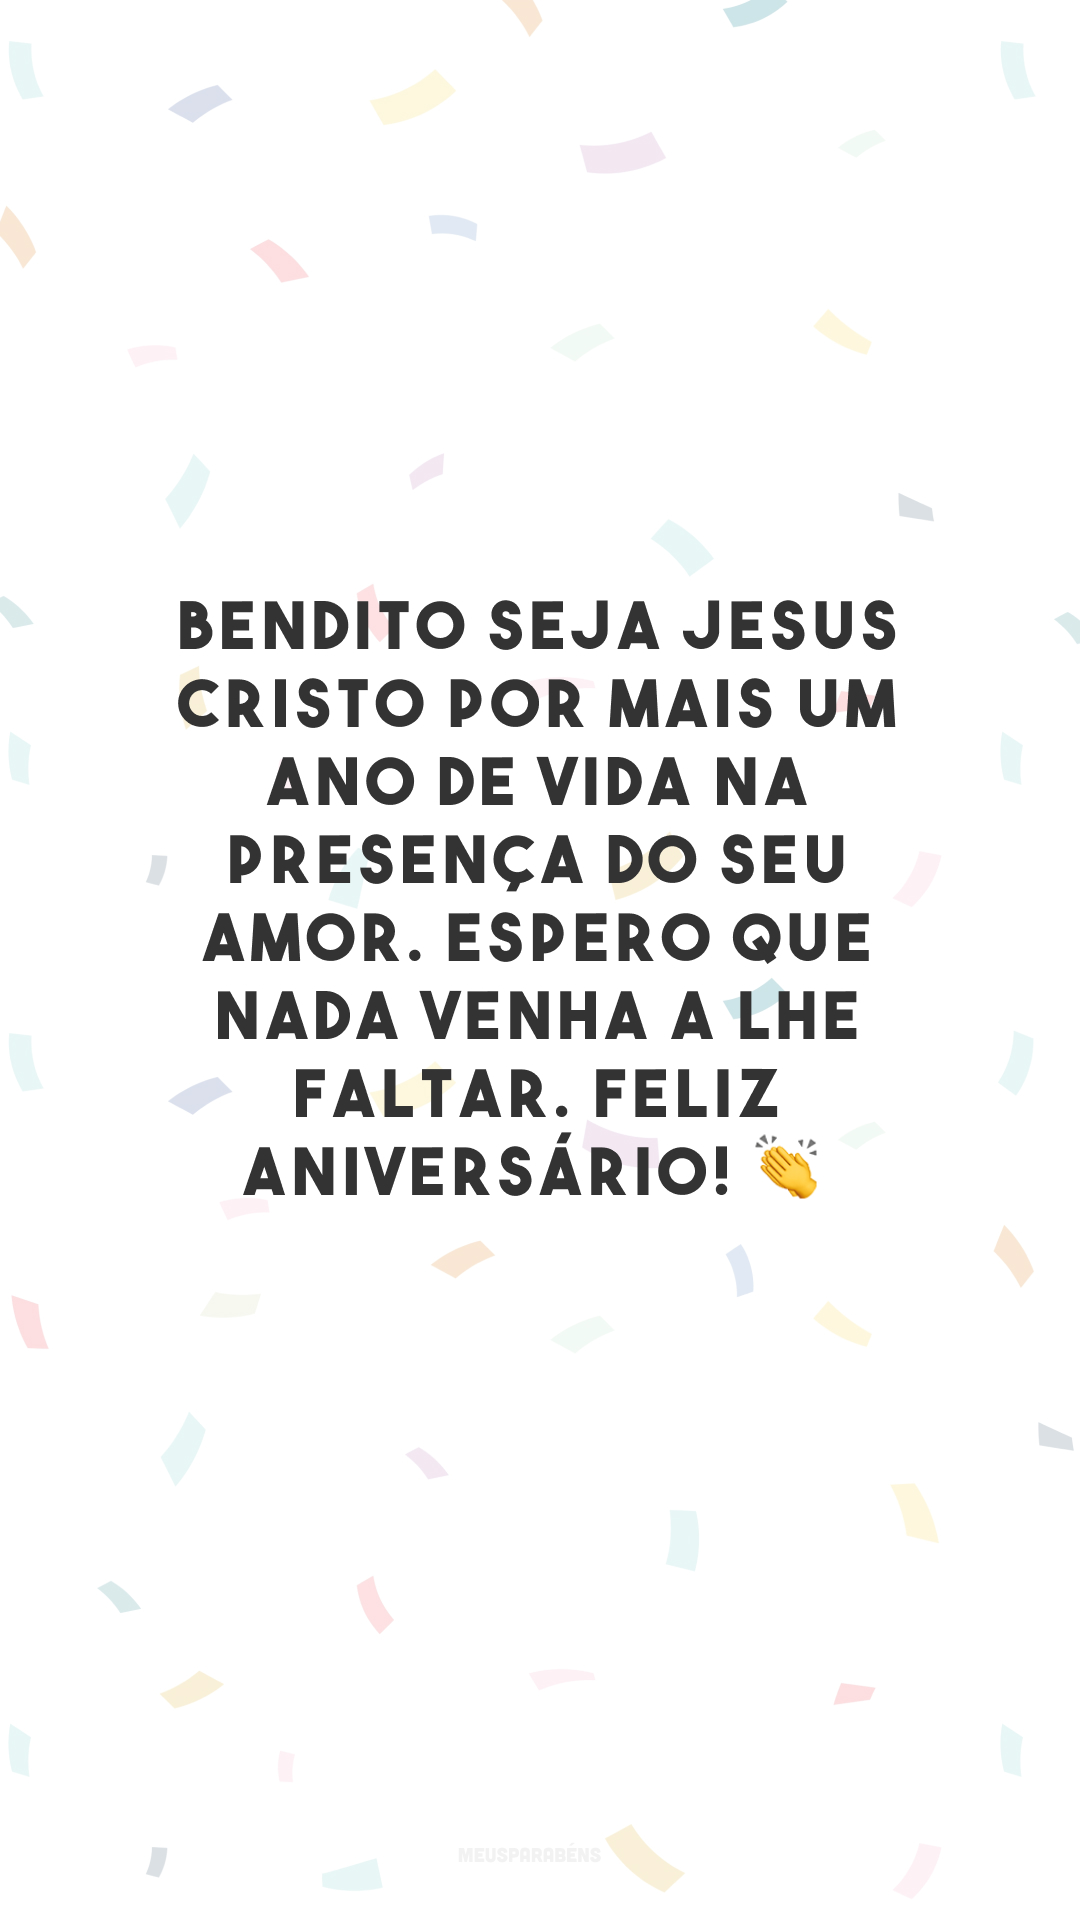 Bendito seja Jesus Cristo por mais um ano de vida na presença do Seu amor. Espero que nada venha a lhe faltar. Feliz aniversário! 👏

